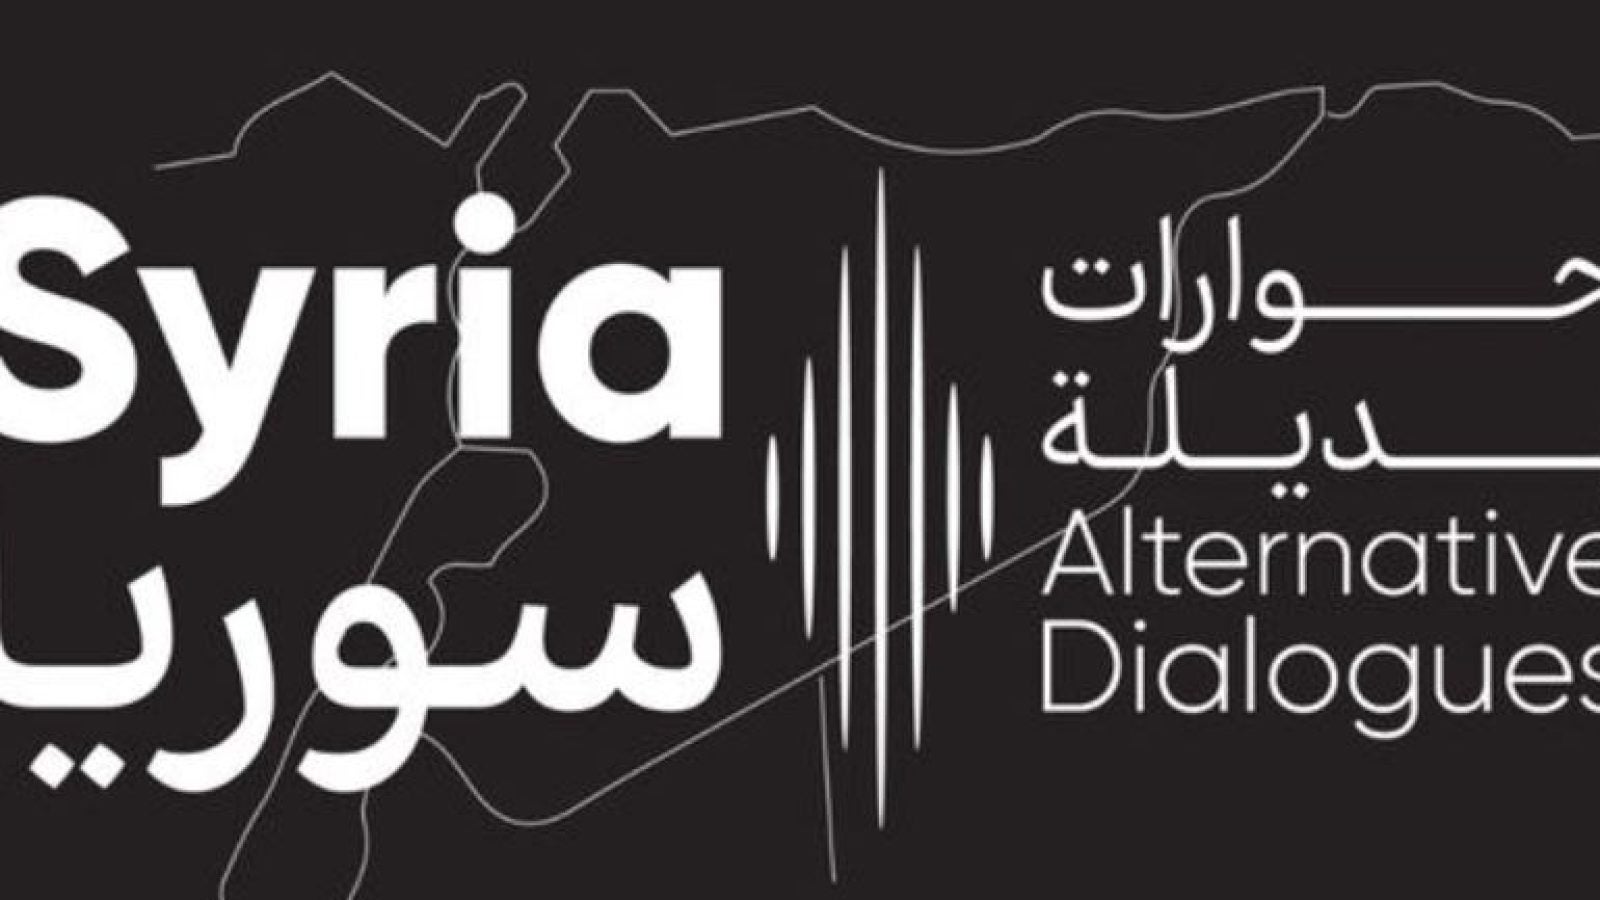 Syria Dialogues logo